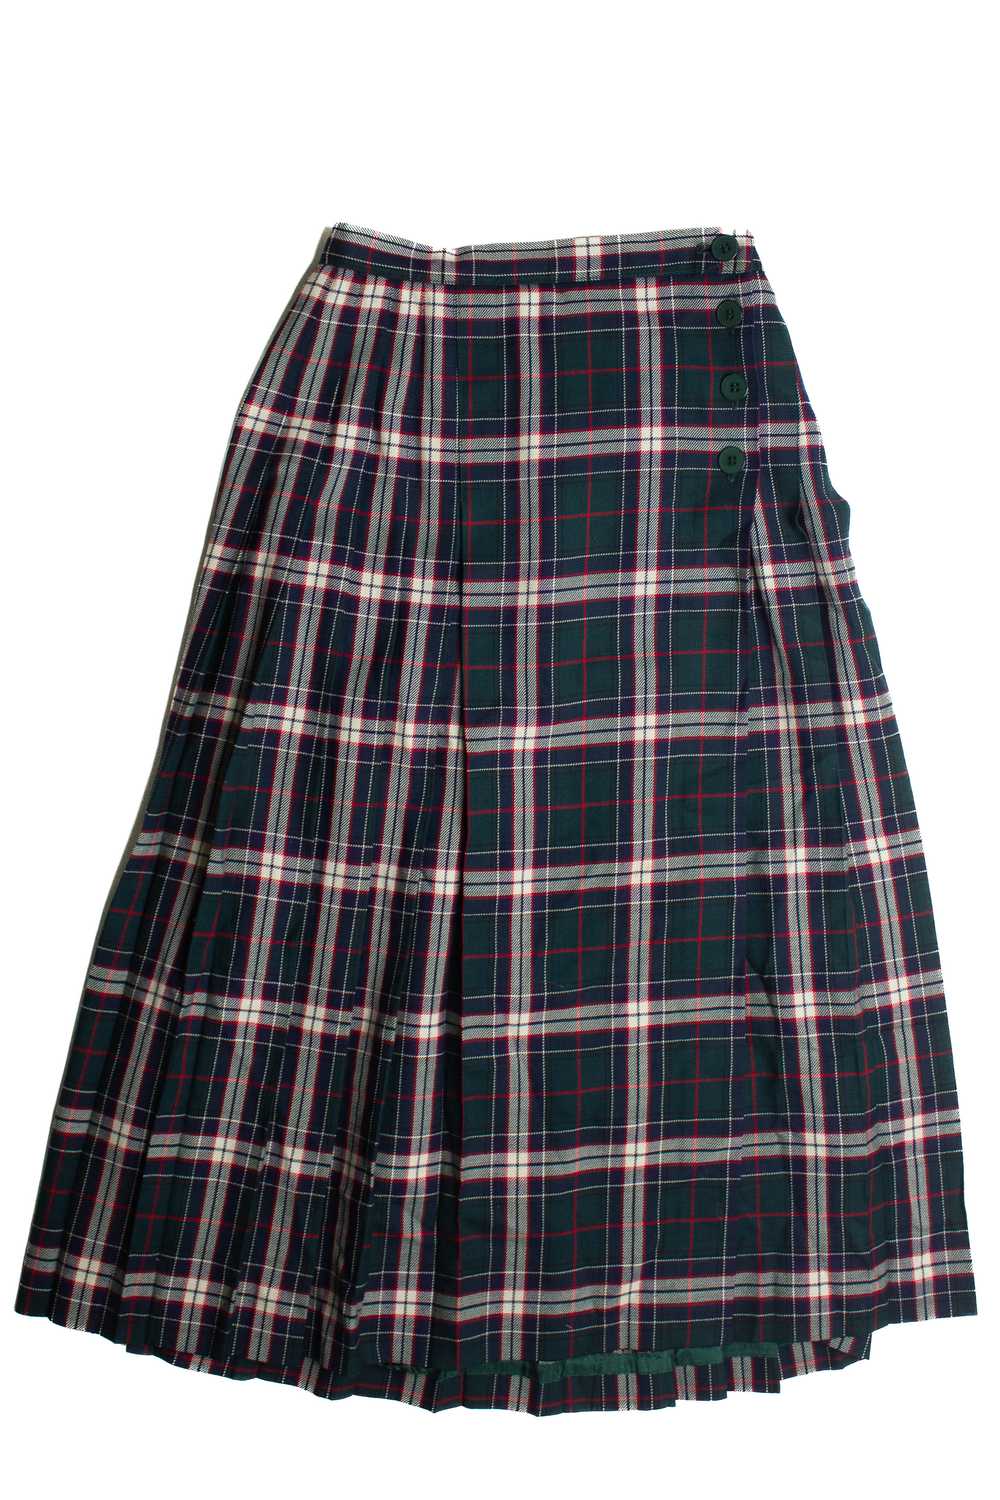 Vintage Plaid Wool Maxi Skirt (80s) 690 - image 1